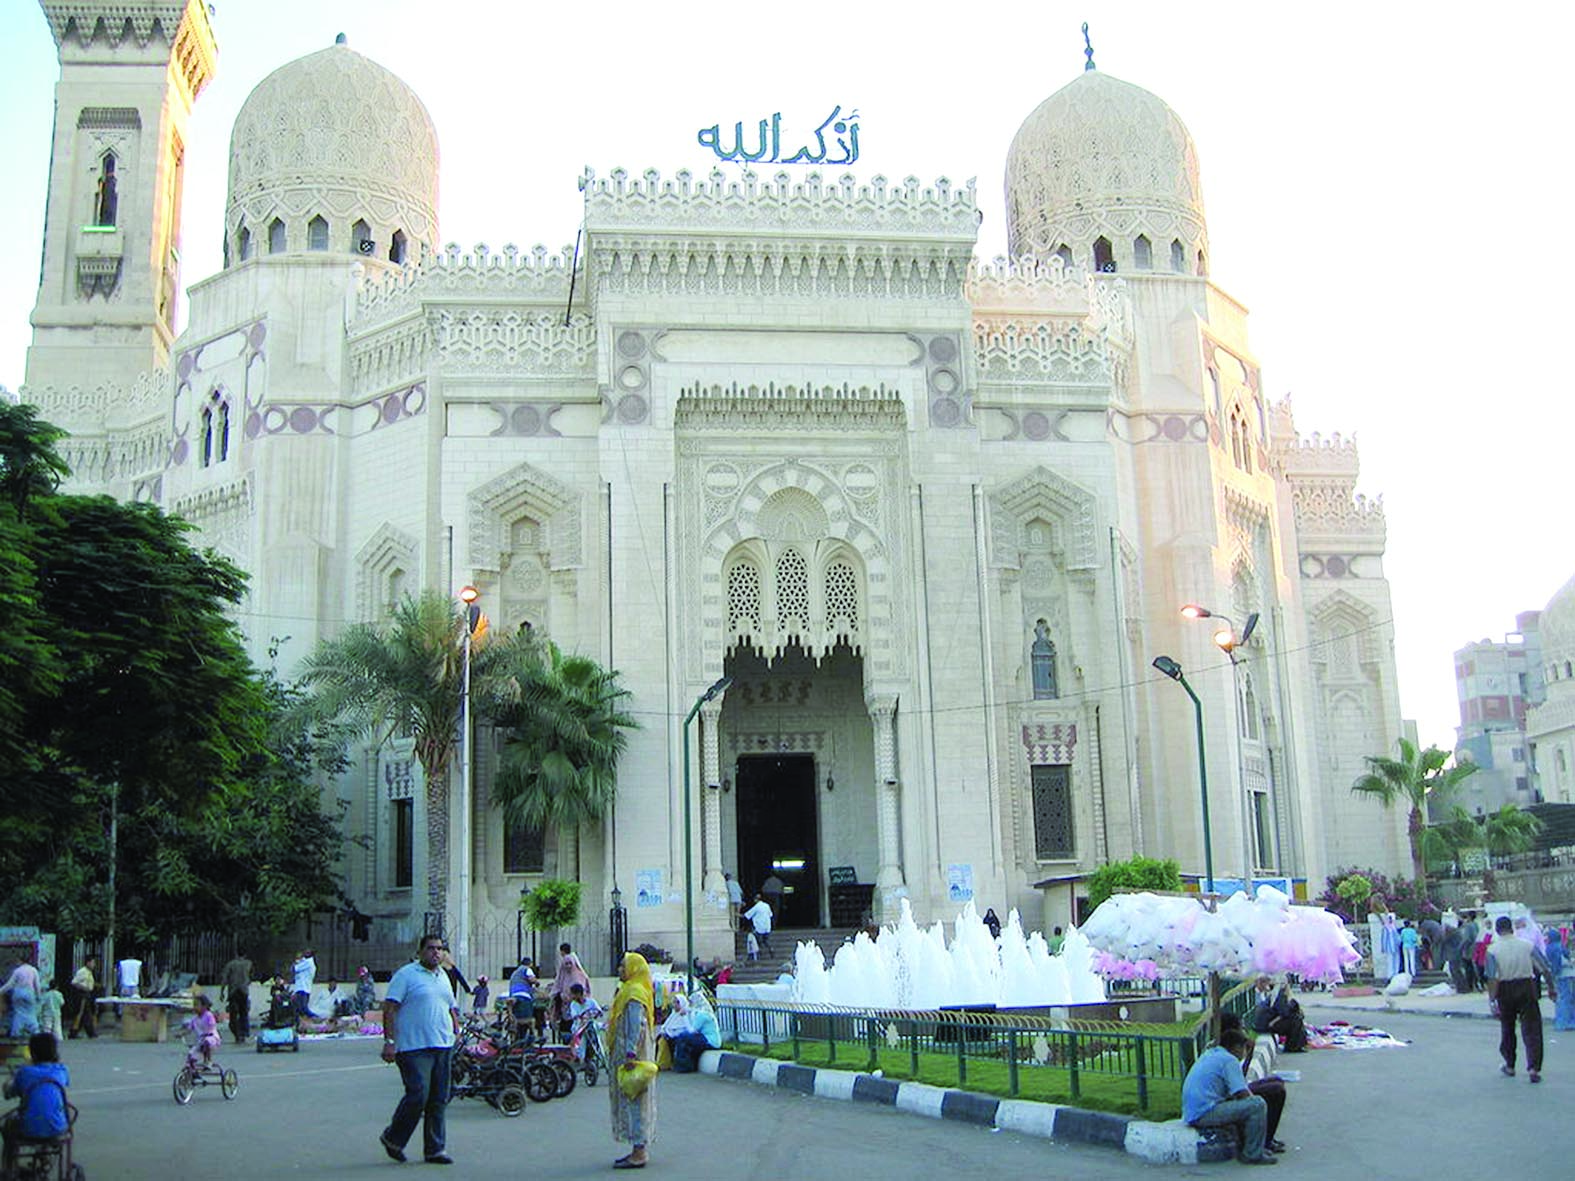 شاهد جامع أبو العباس المرسي صرح تاريخي في الإسكندرية